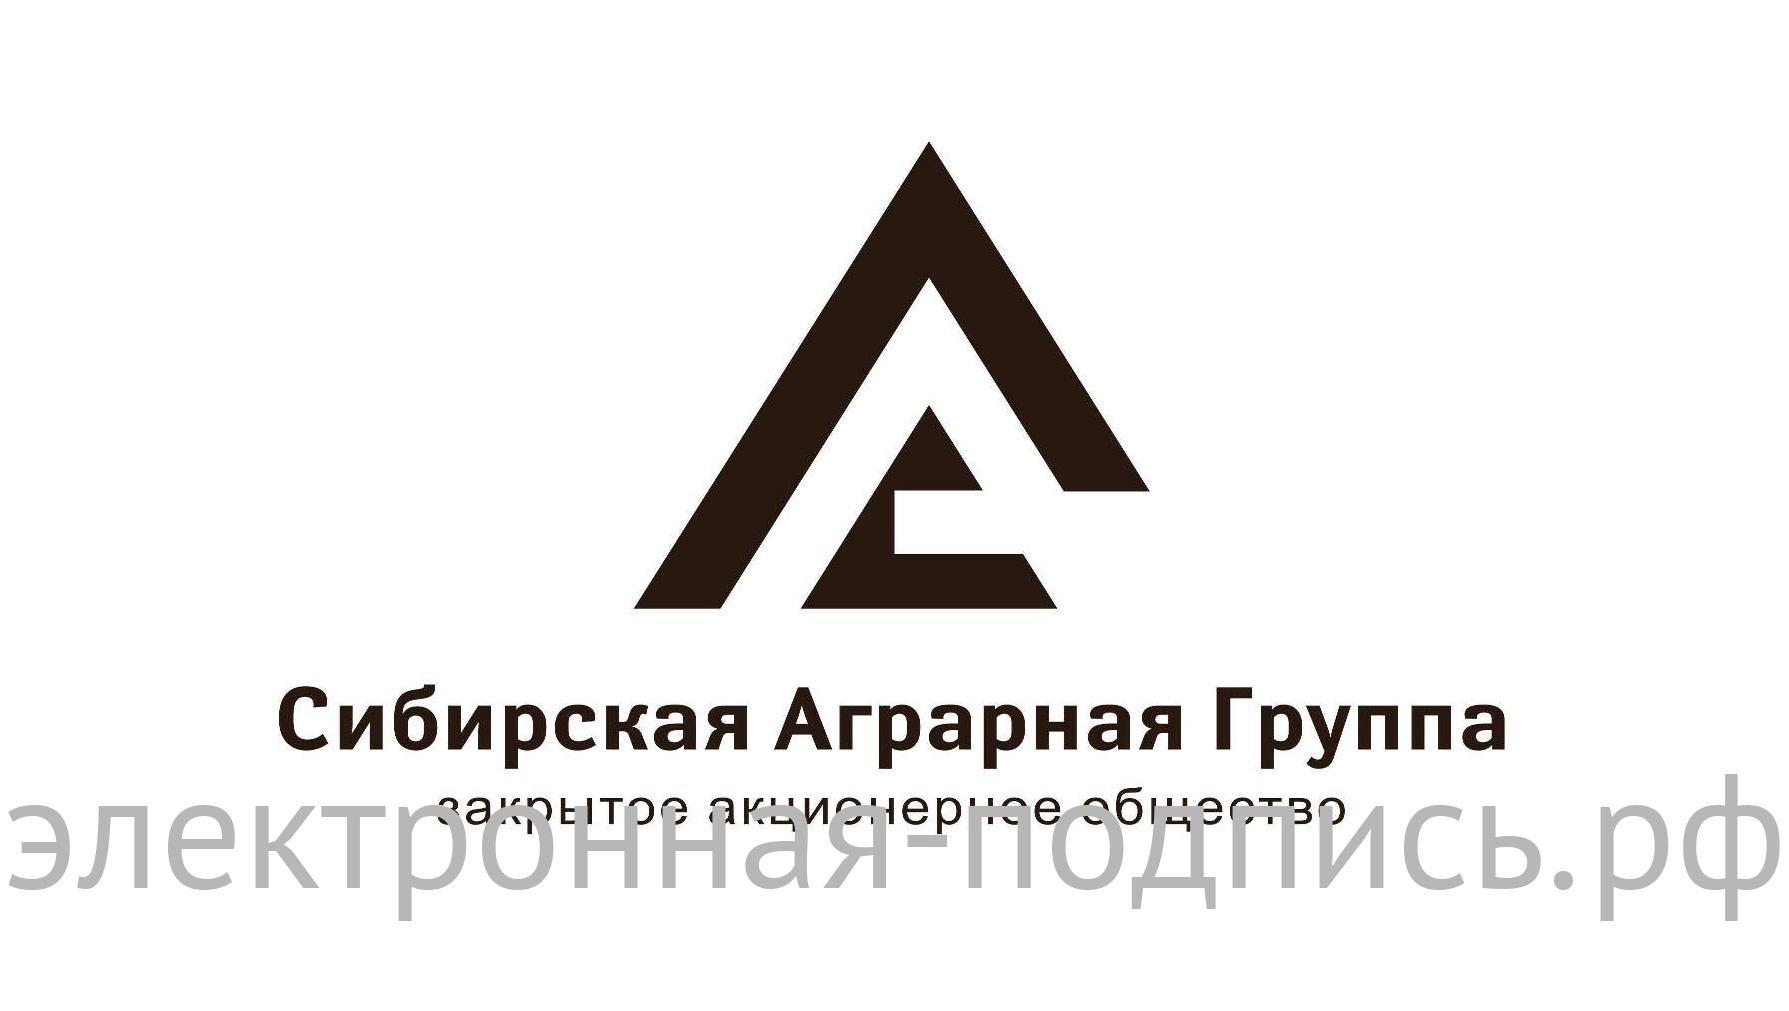 Электронная подпись для ЭТП Сибирская Аграрная Группа 